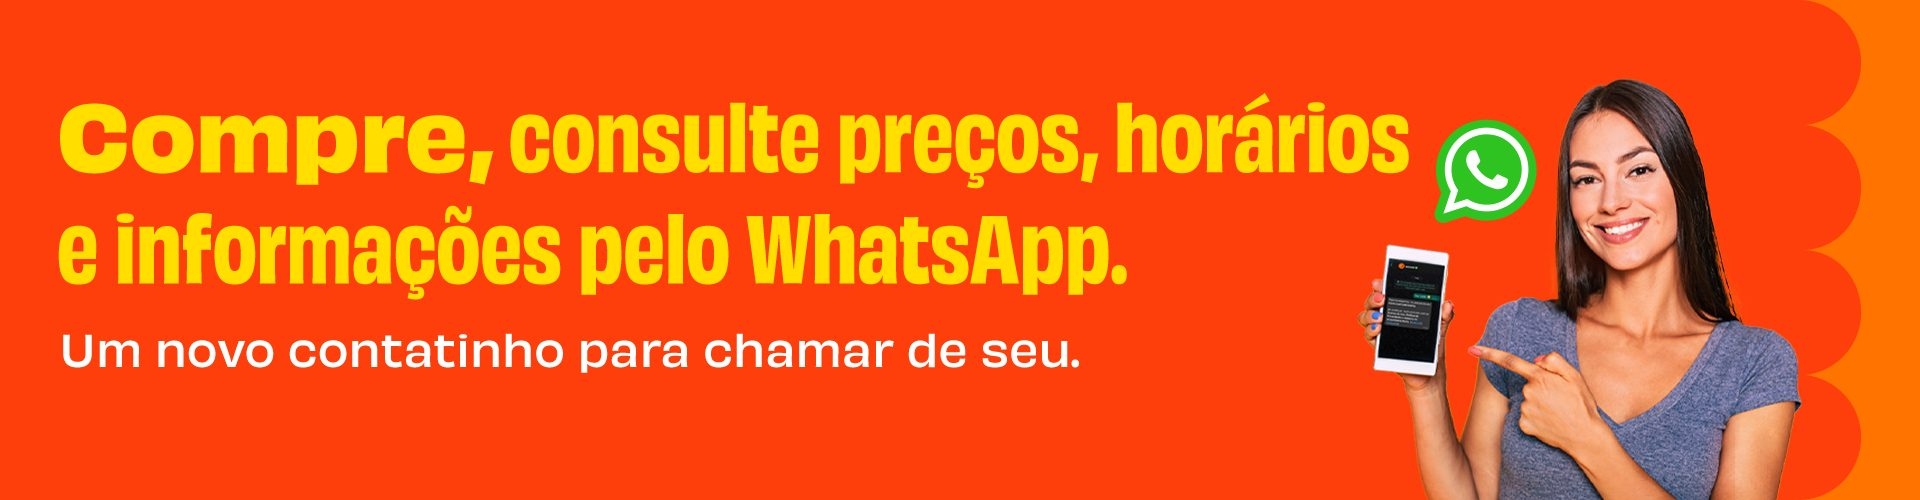 Compre, consulte preços, horários e informações pelo Whatsapp da wemobi